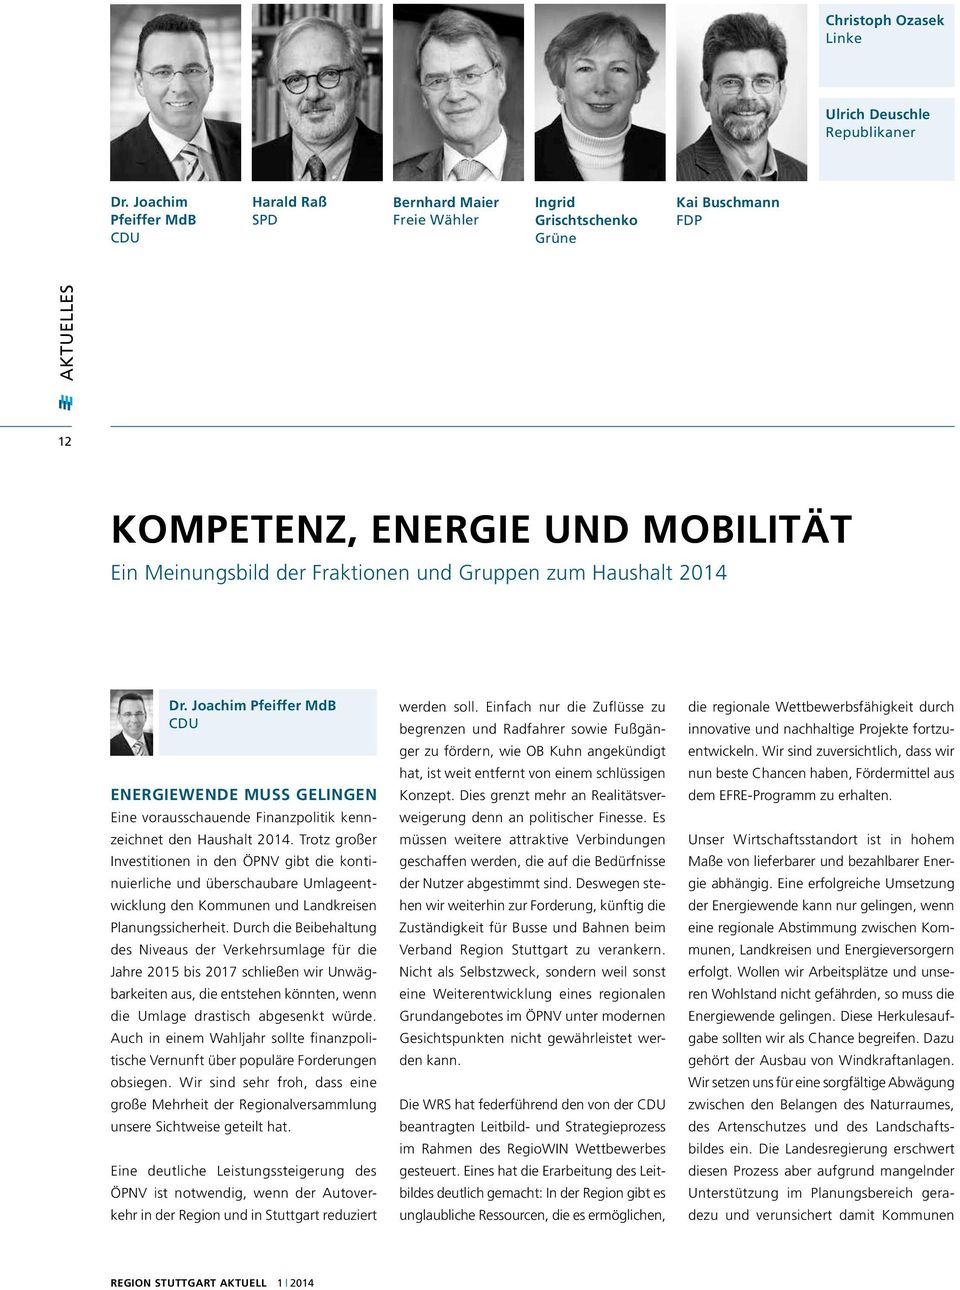 Gruppen zum Haushalt 2014 Dr. Joachim Pfeiffer MdB CDU Energiewende muss gelingen Eine vorausschauende Finanzpolitik kennzeichnet den Haushalt 2014.